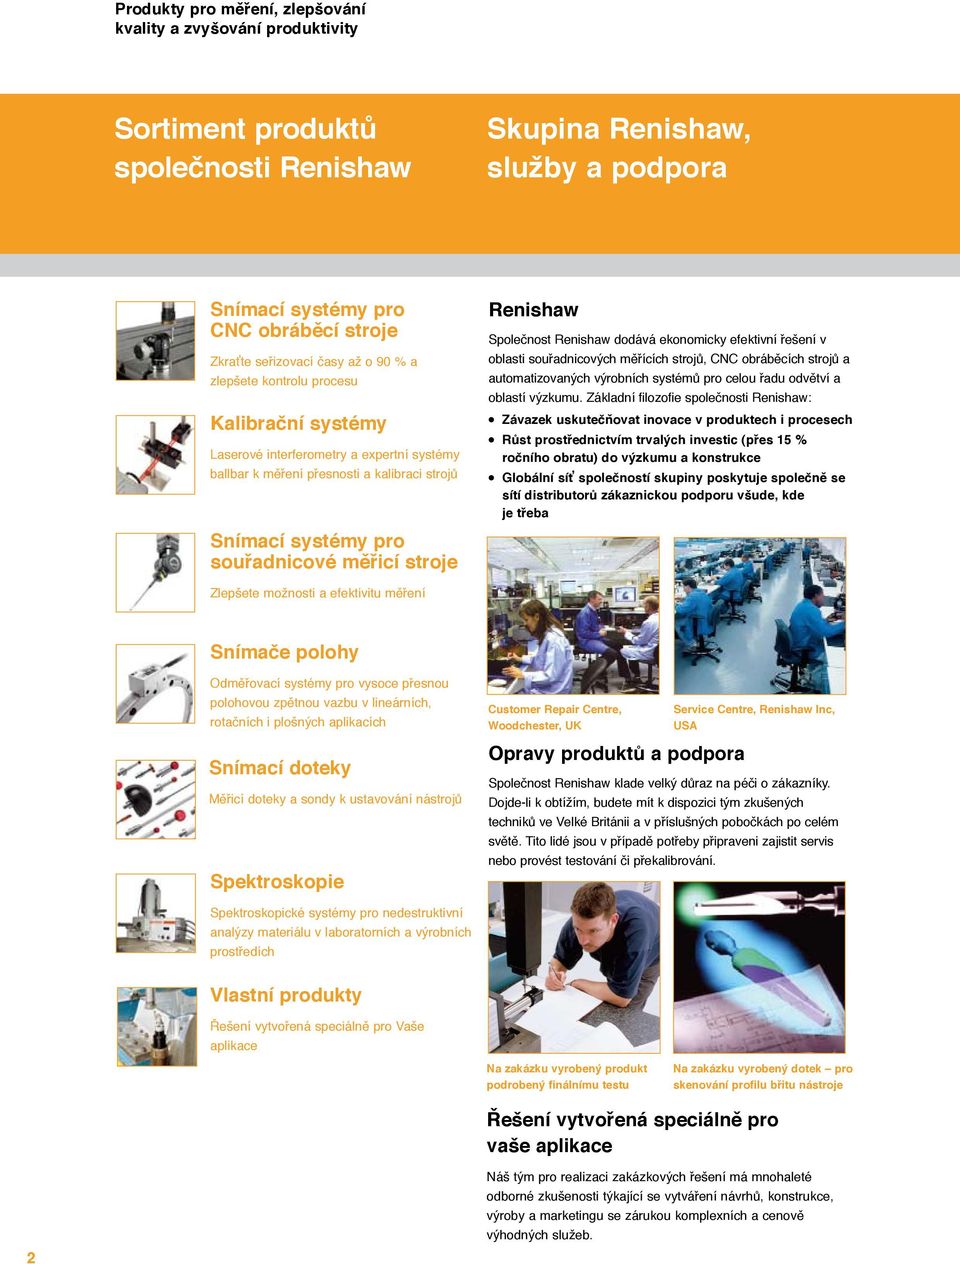 Renishaw Společnost Renishaw dodává ekonomicky efektivní řešení v oblasti souřadnicových měřících strojů, CNC obráběcích strojů a automatizovaných výrobních systémů pro celou řadu odvětví a oblastí